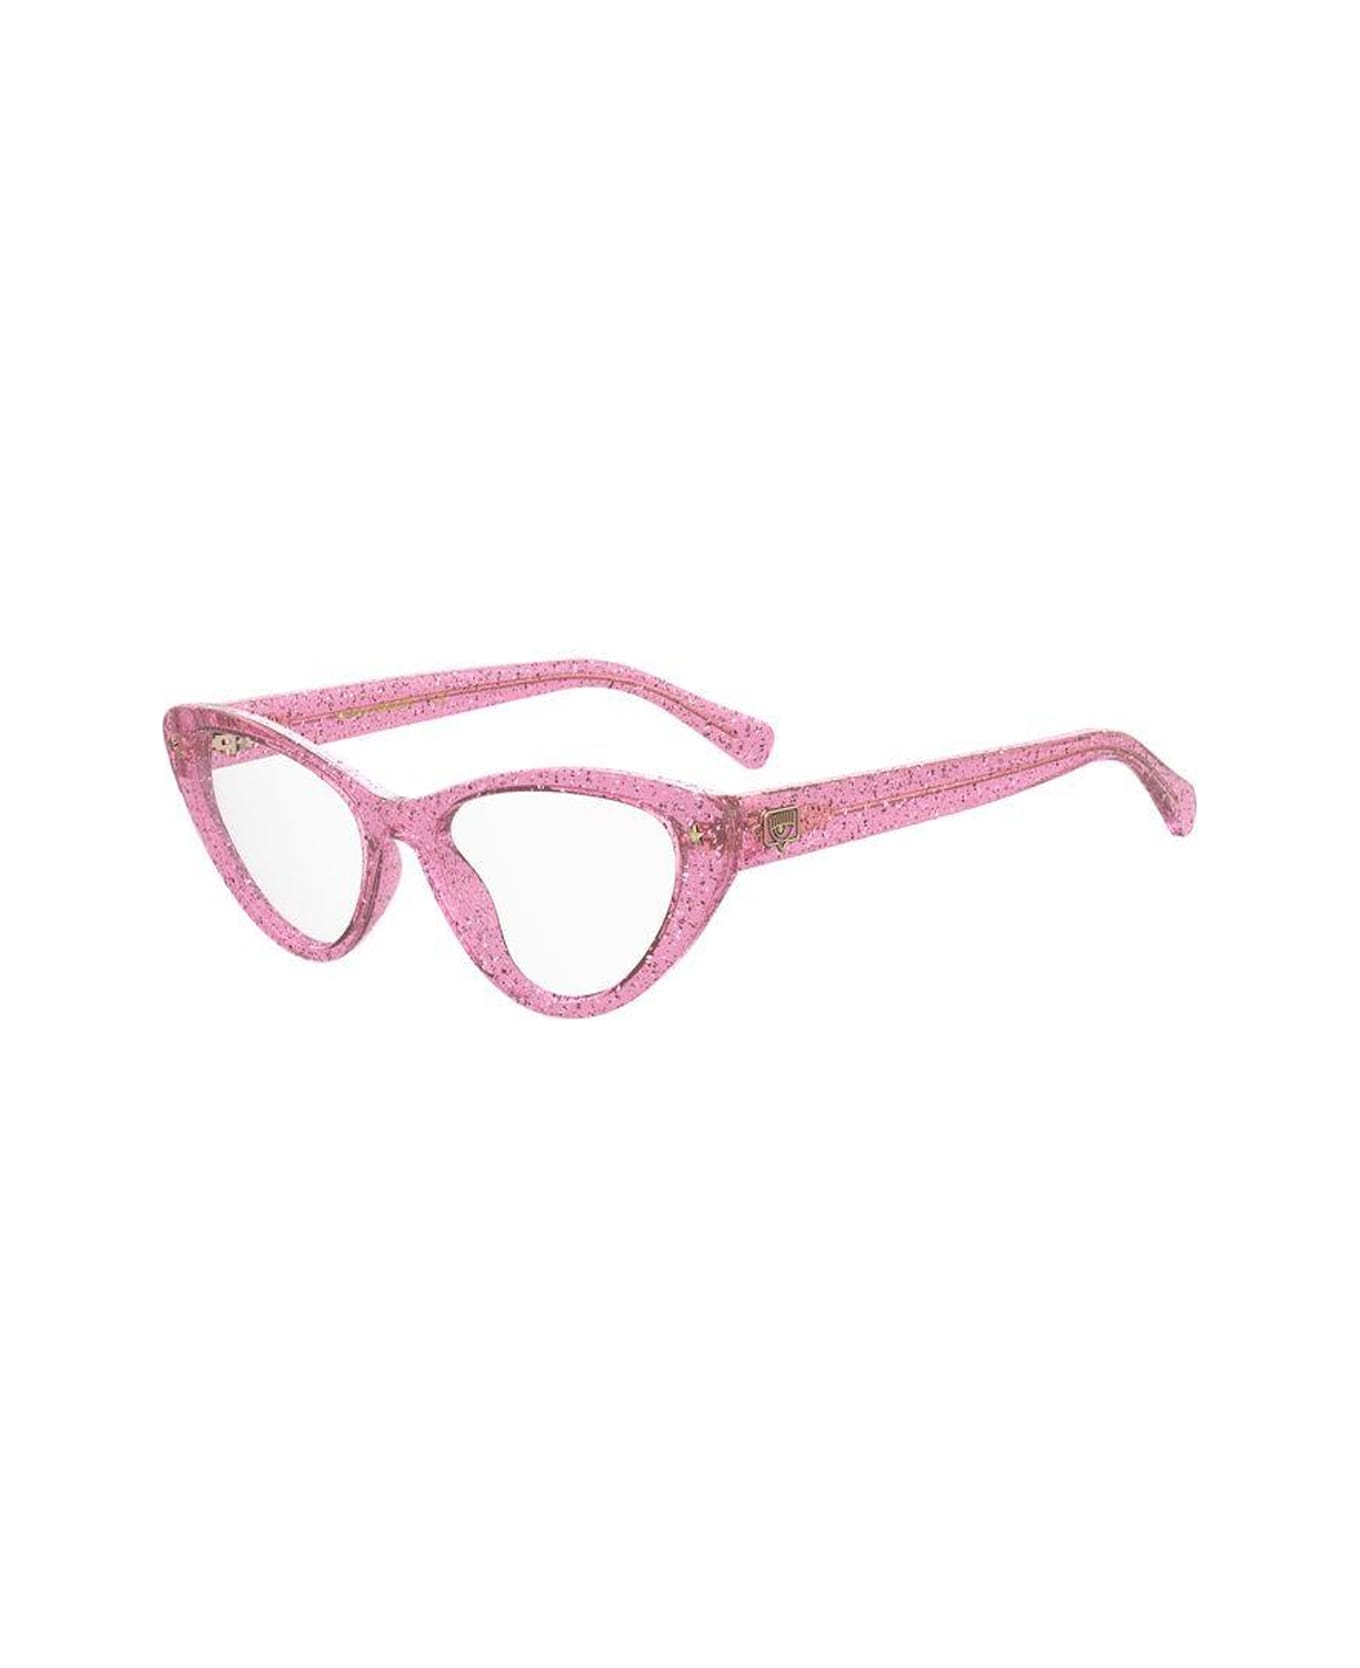 Chiara Ferragni Cf 7012 Pink Glitter Glasses - Rosa アイウェア